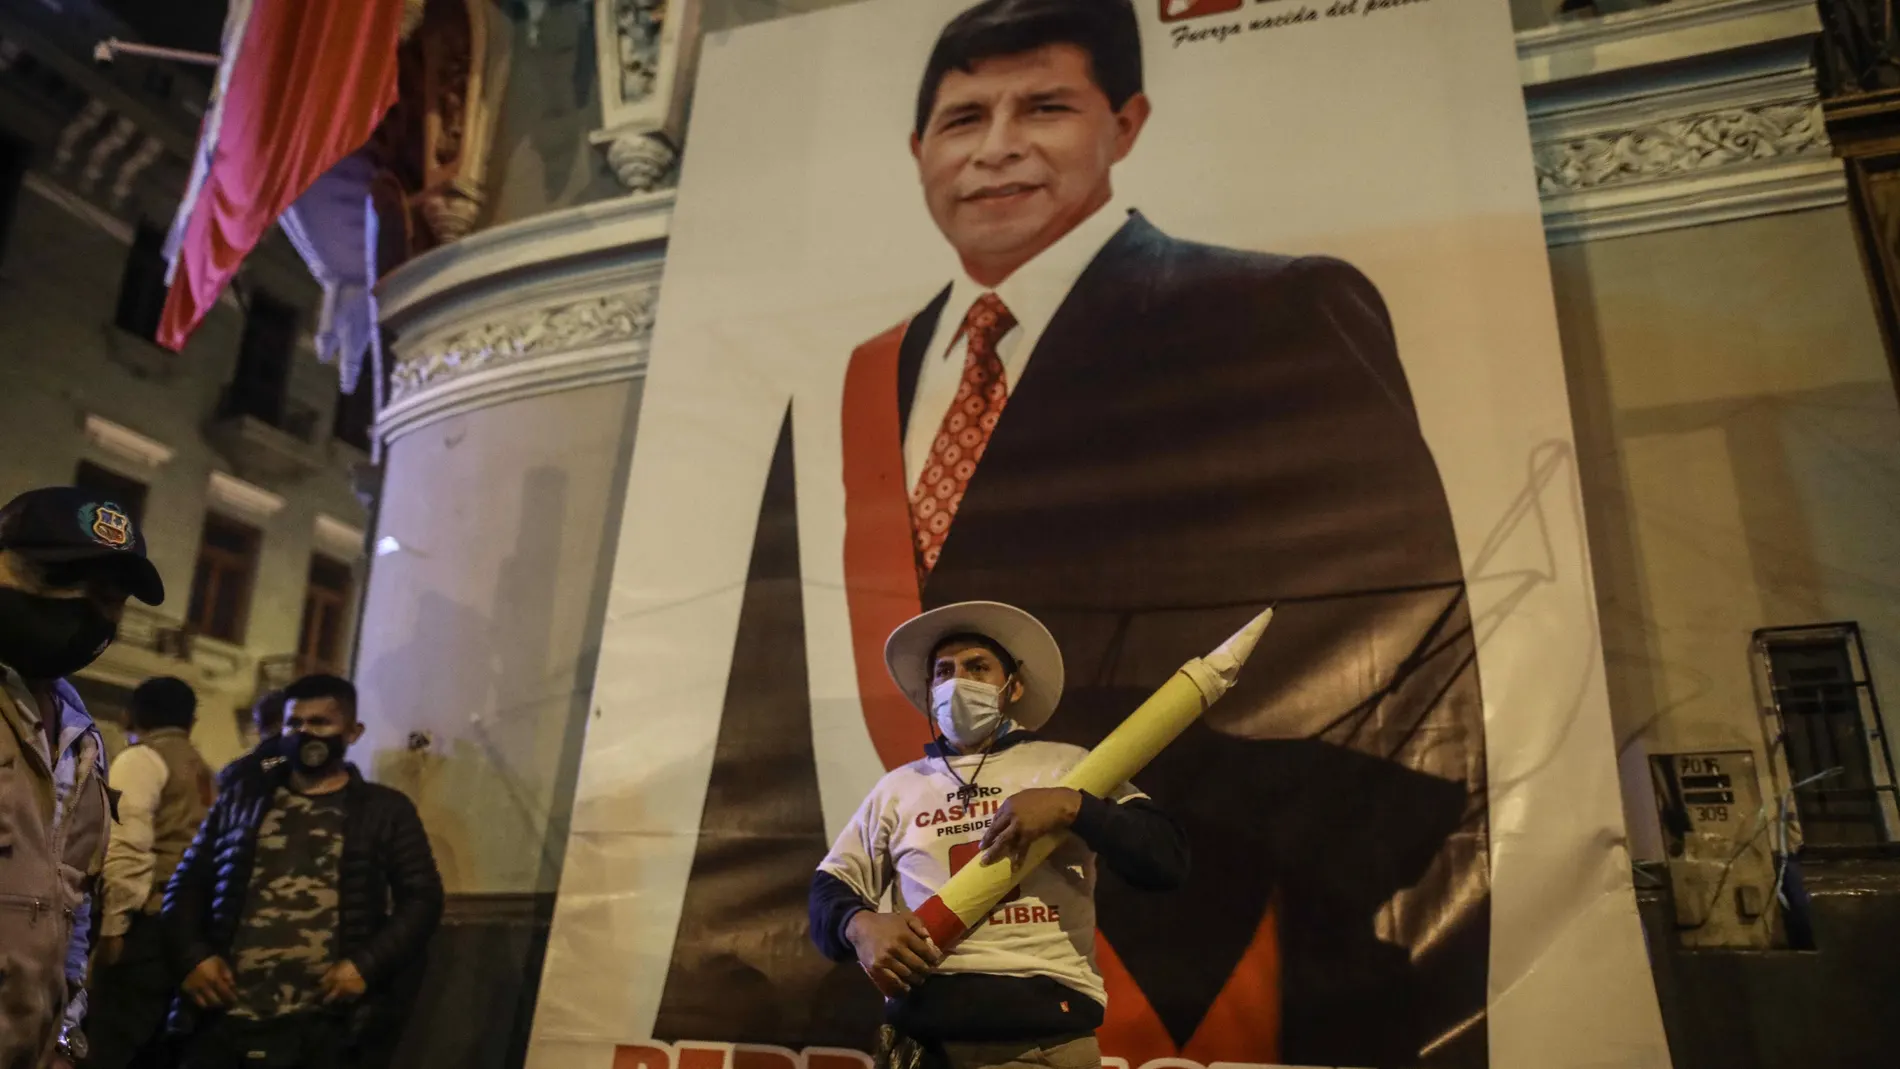 AME5998. LIMA (PERÚ), 15/06/2021.- Un simpatizante del candidato presidencial Pedro Castillo posa hoy junto a su imagen en la sede central de su partido, en Lima (Perú). El candidato izquierdista Pedro Castillo se impuso con el 50,12 % de votos a la postulante derechista Keiko Fujimori, que obtuvo el 49,87 %, al concluir con el 100 % de actas contabilizadas de la segunda vuelta presidencial en Perú. A pesar de que la Oficina Nacional de Procesos Electorales (ONPE) concluyó con el cómputo de la votación, aún no puede proclamar al ganador debido a que el partido fujimorista Fuerza Popular ha pedido la anulación de 200.000 votos aproximadamente por presuntas irregularidades. EFE/Stringer